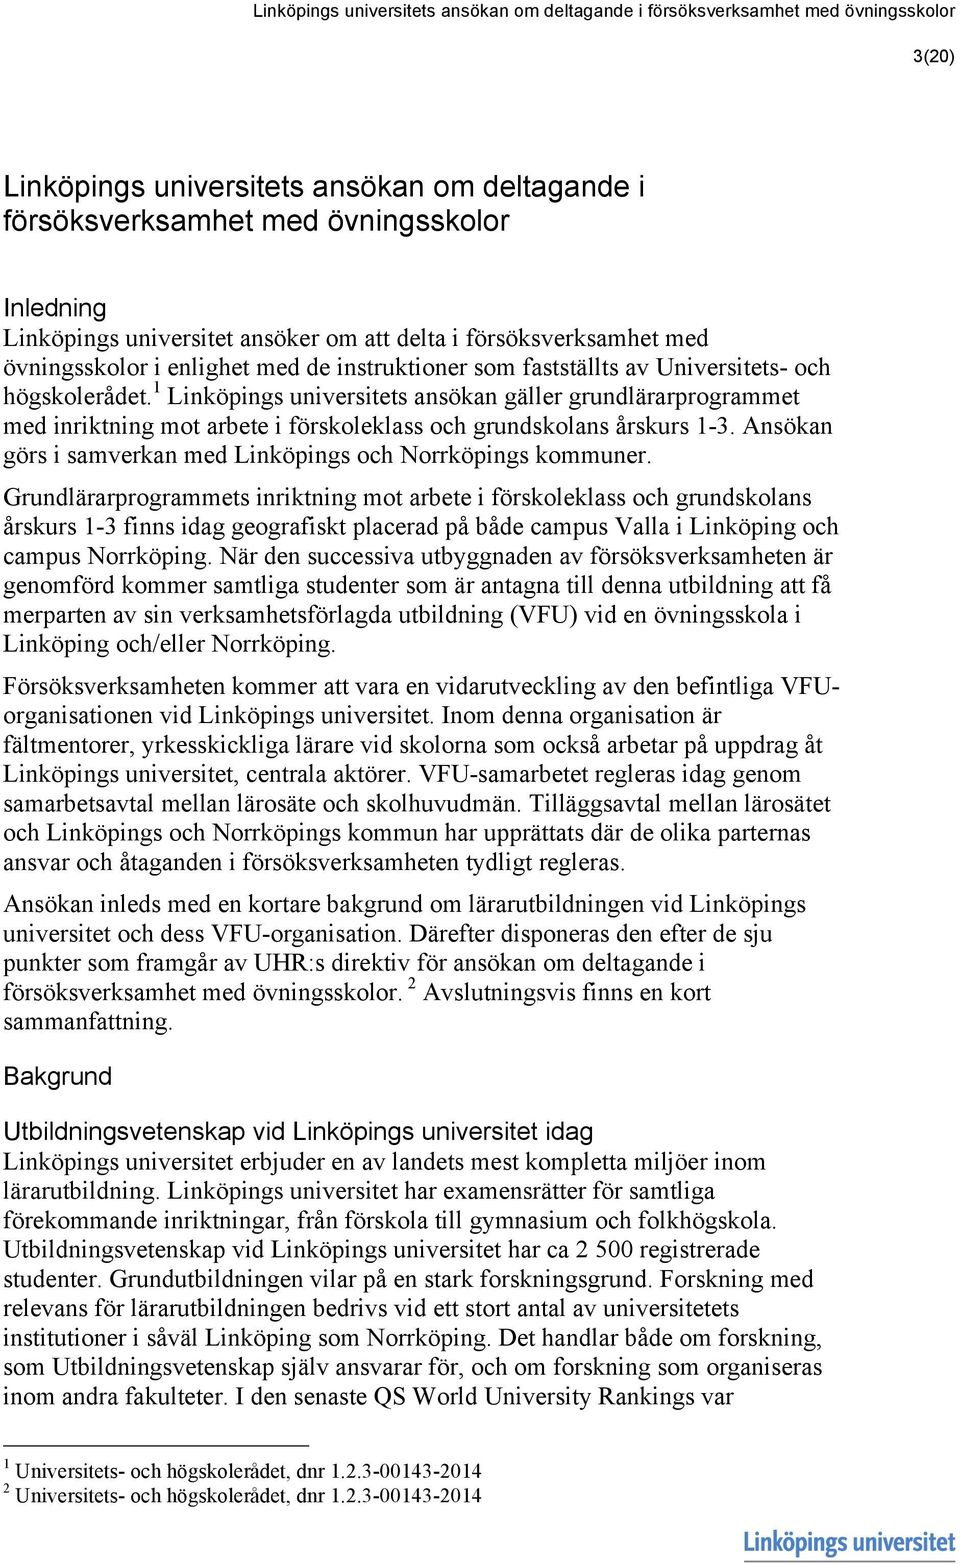 1 Linköpings universitets ansökan gäller grundlärarprogrammet med inriktning mot arbete i förskoleklass och grundskolans årskurs 1-3. Ansökan görs i samverkan med Linköpings och Norrköpings kommuner.